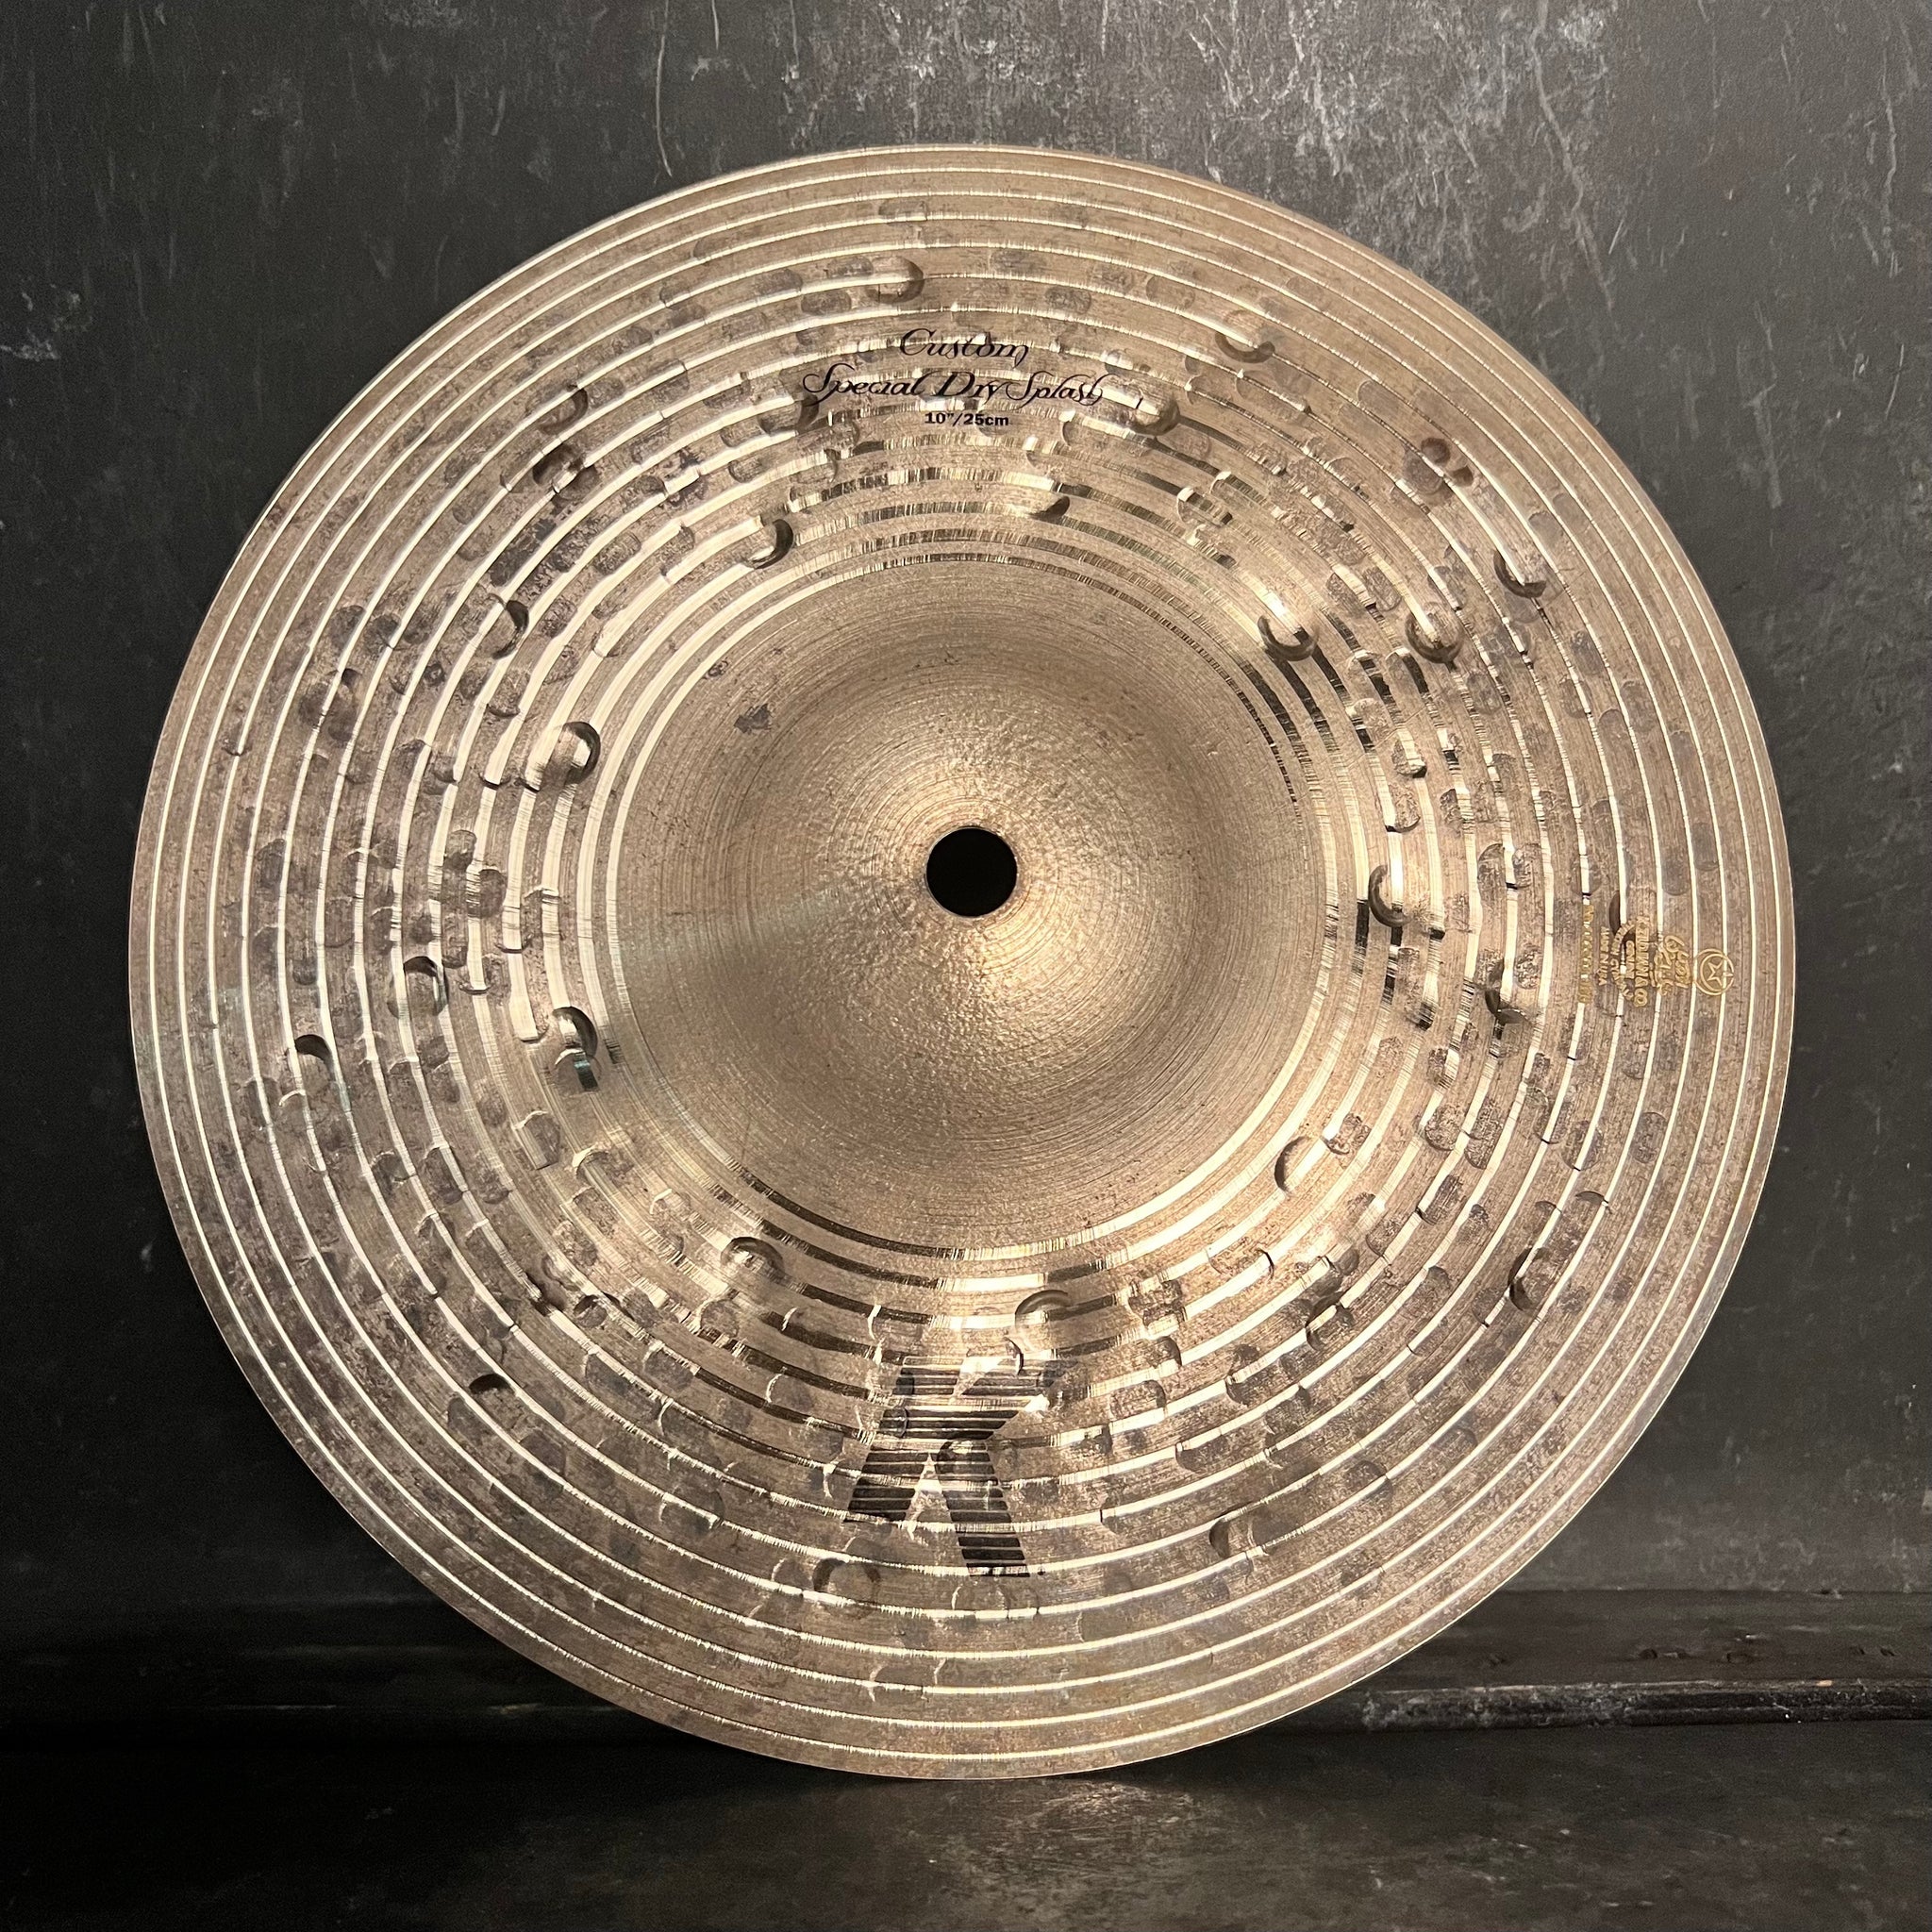 NEW Zildjian 10" K Custom Special Dry Splash Cymbal - 284g